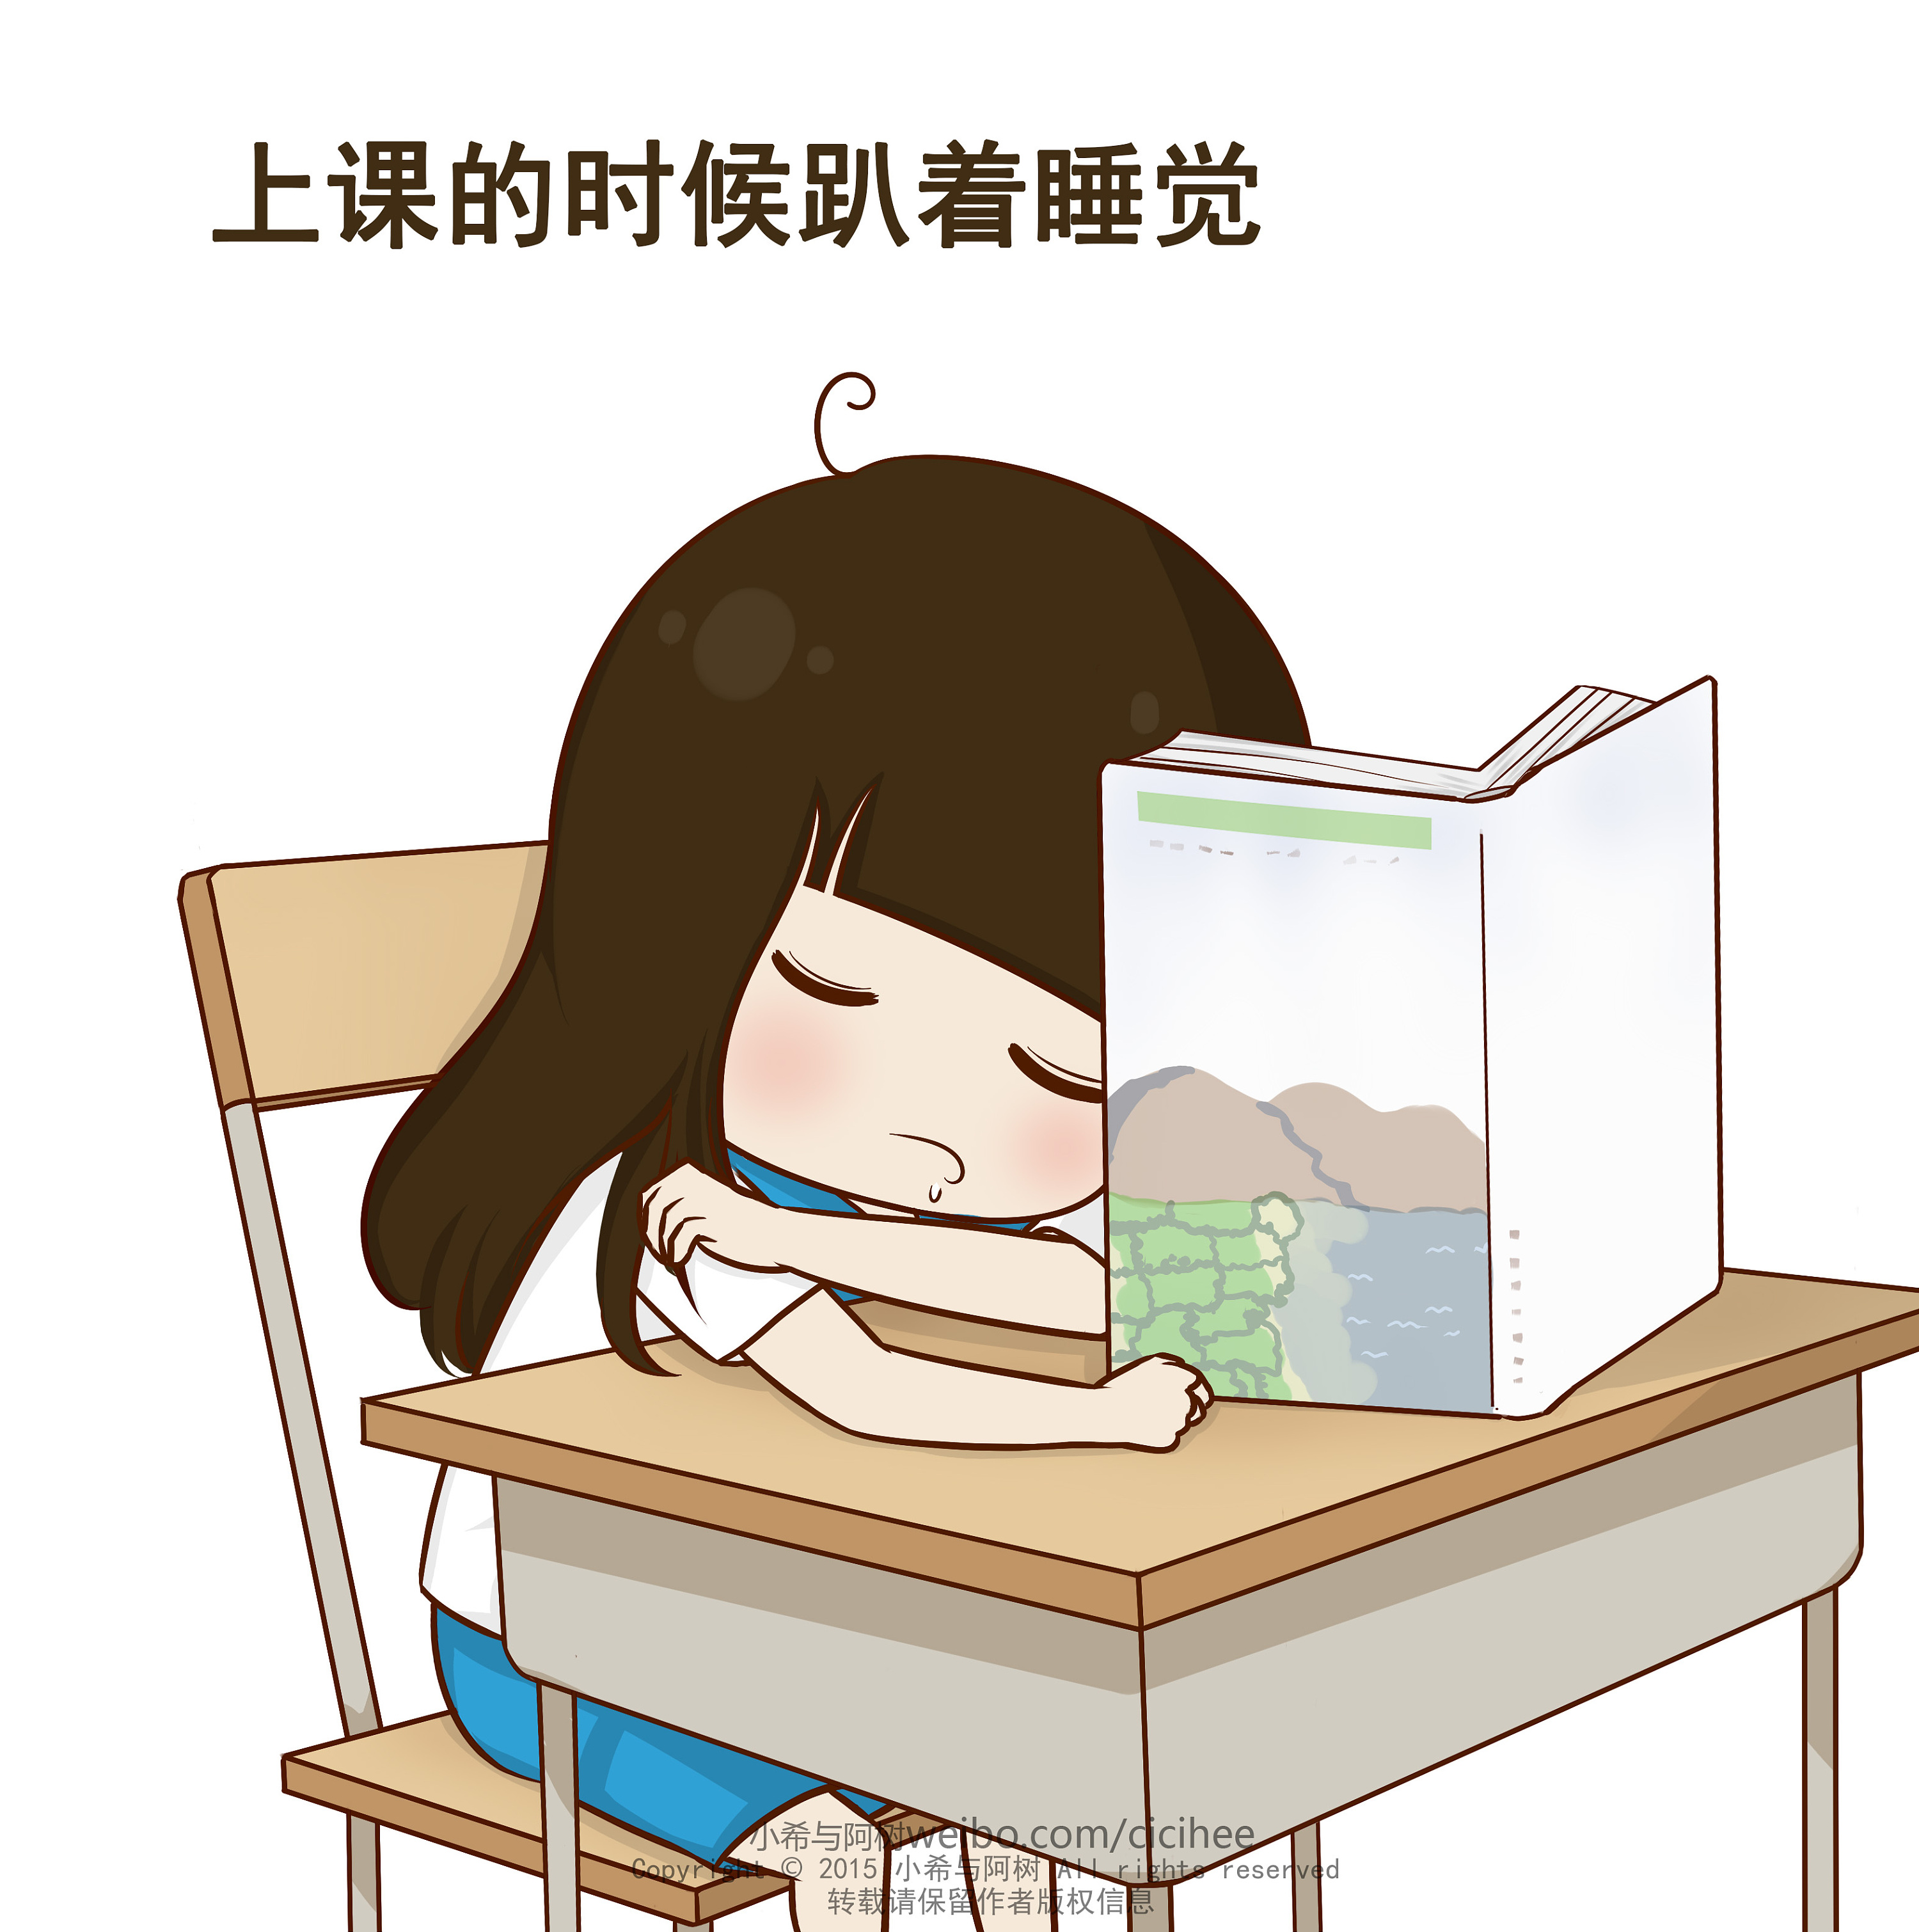 学生上课睡觉卡通-图库-五毛网